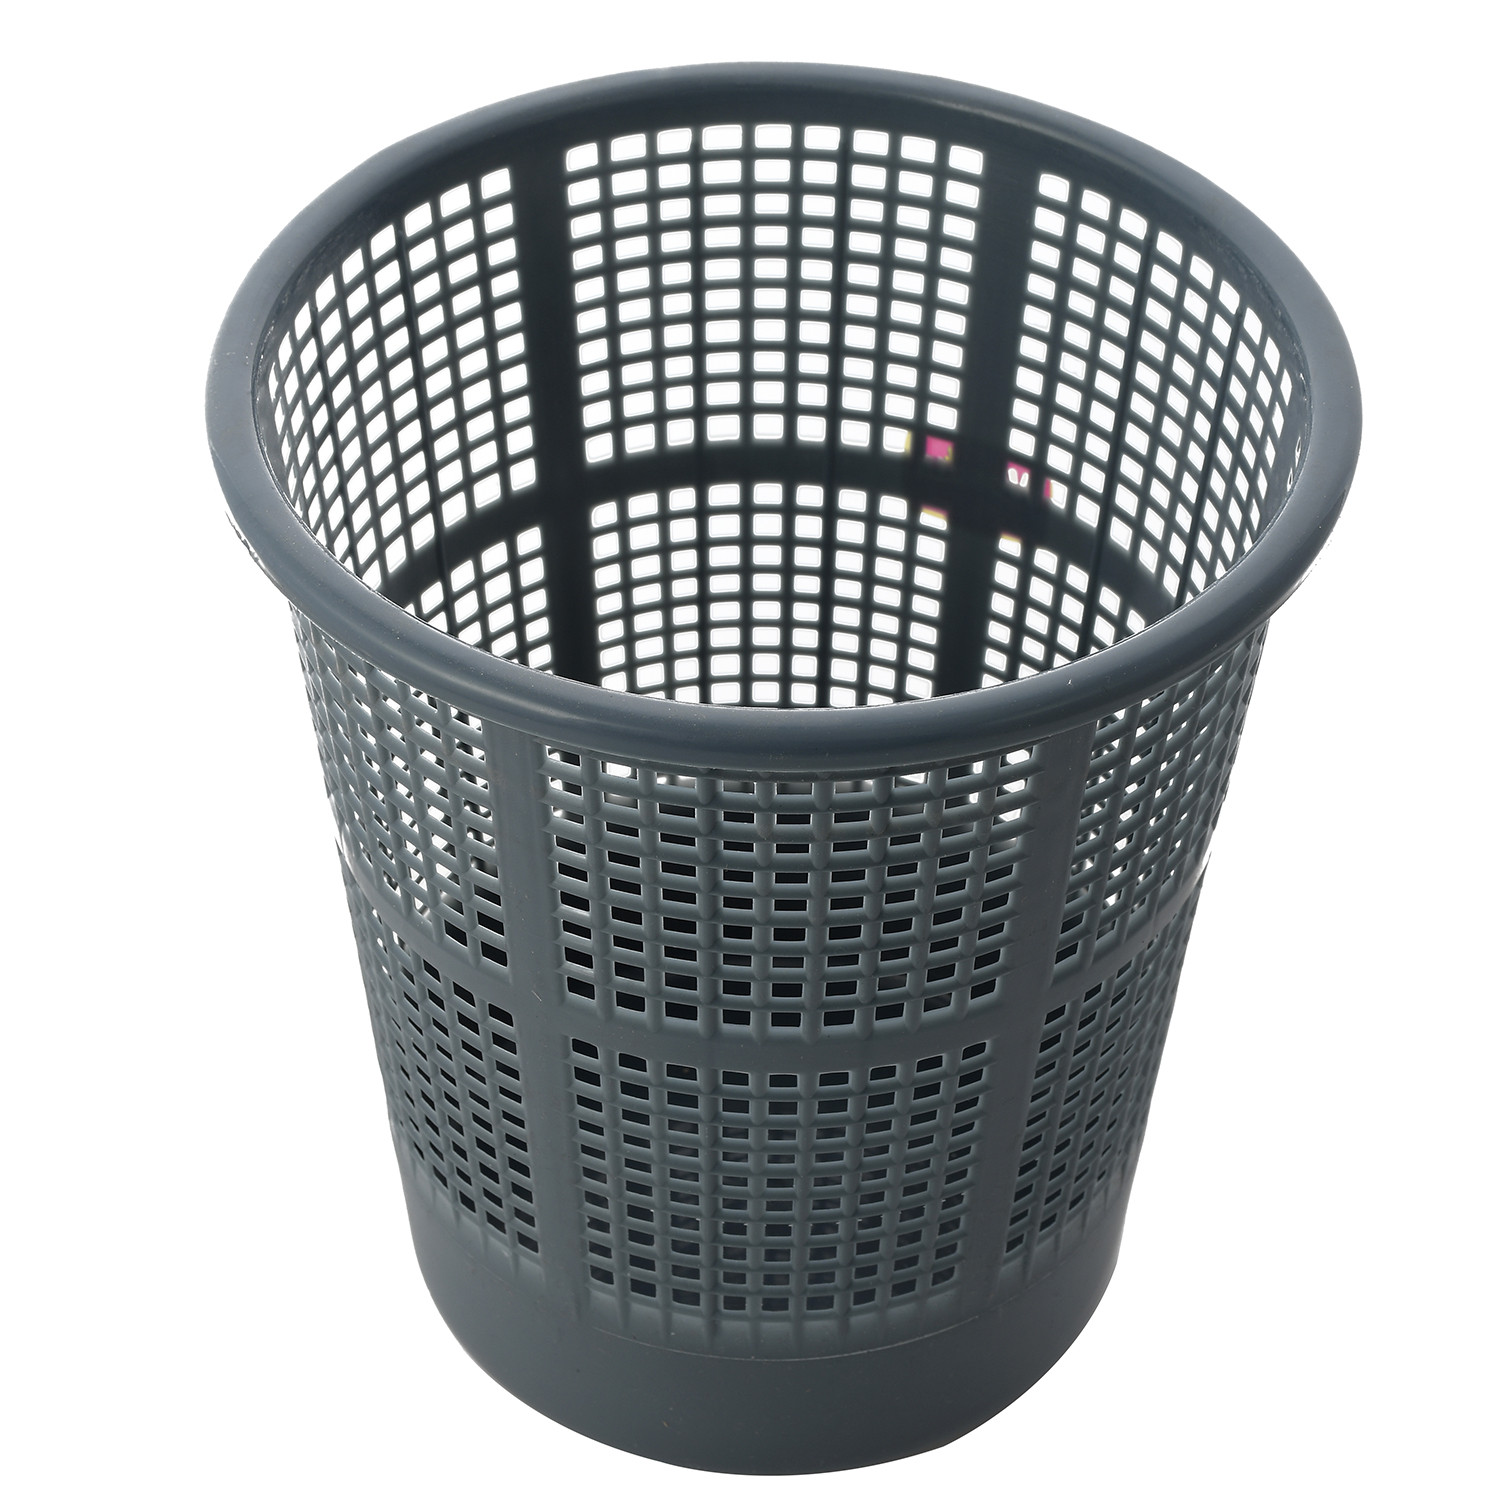 Kuber Industries Plastic Mesh Dustbin Garbage Bin for Office use, School, Bedroom,Kids Room, Home, Multi Purpose,5 Liters (Brown & Grey & Pink)-KUBMART284